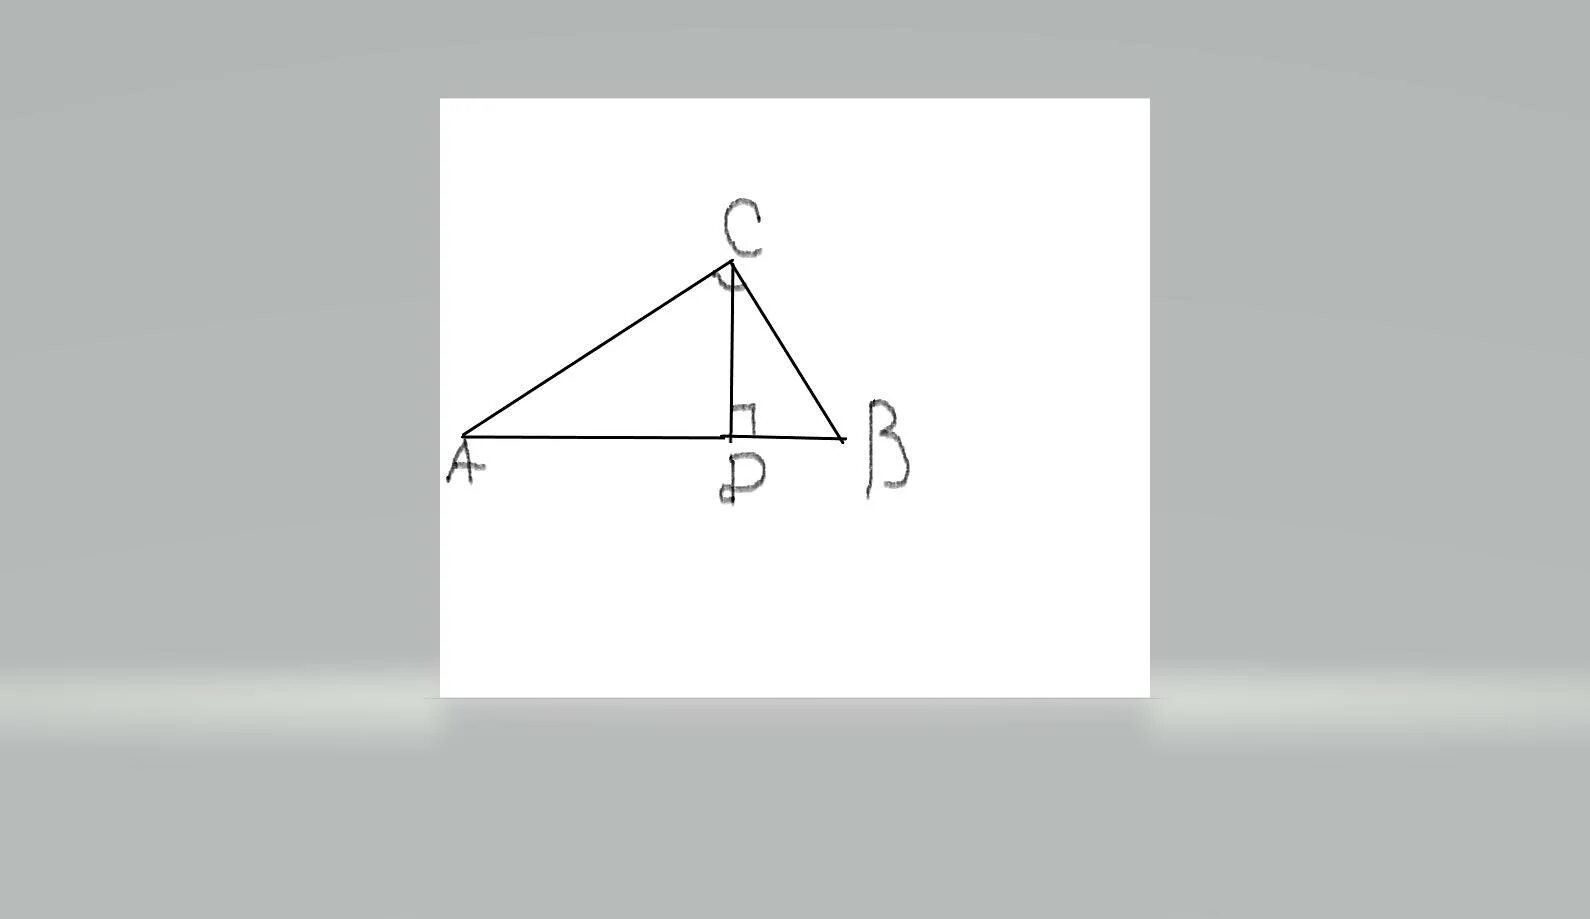 Катеты равны 12 и 5. Катет прямоугольного равнобедренного треугольника. Найдите катет ba треугольника изображенного на рисунке. Равнобедренный треугольник с катетами 4. У равнобедренного прямоугольного треугольника гипотенуза 12.